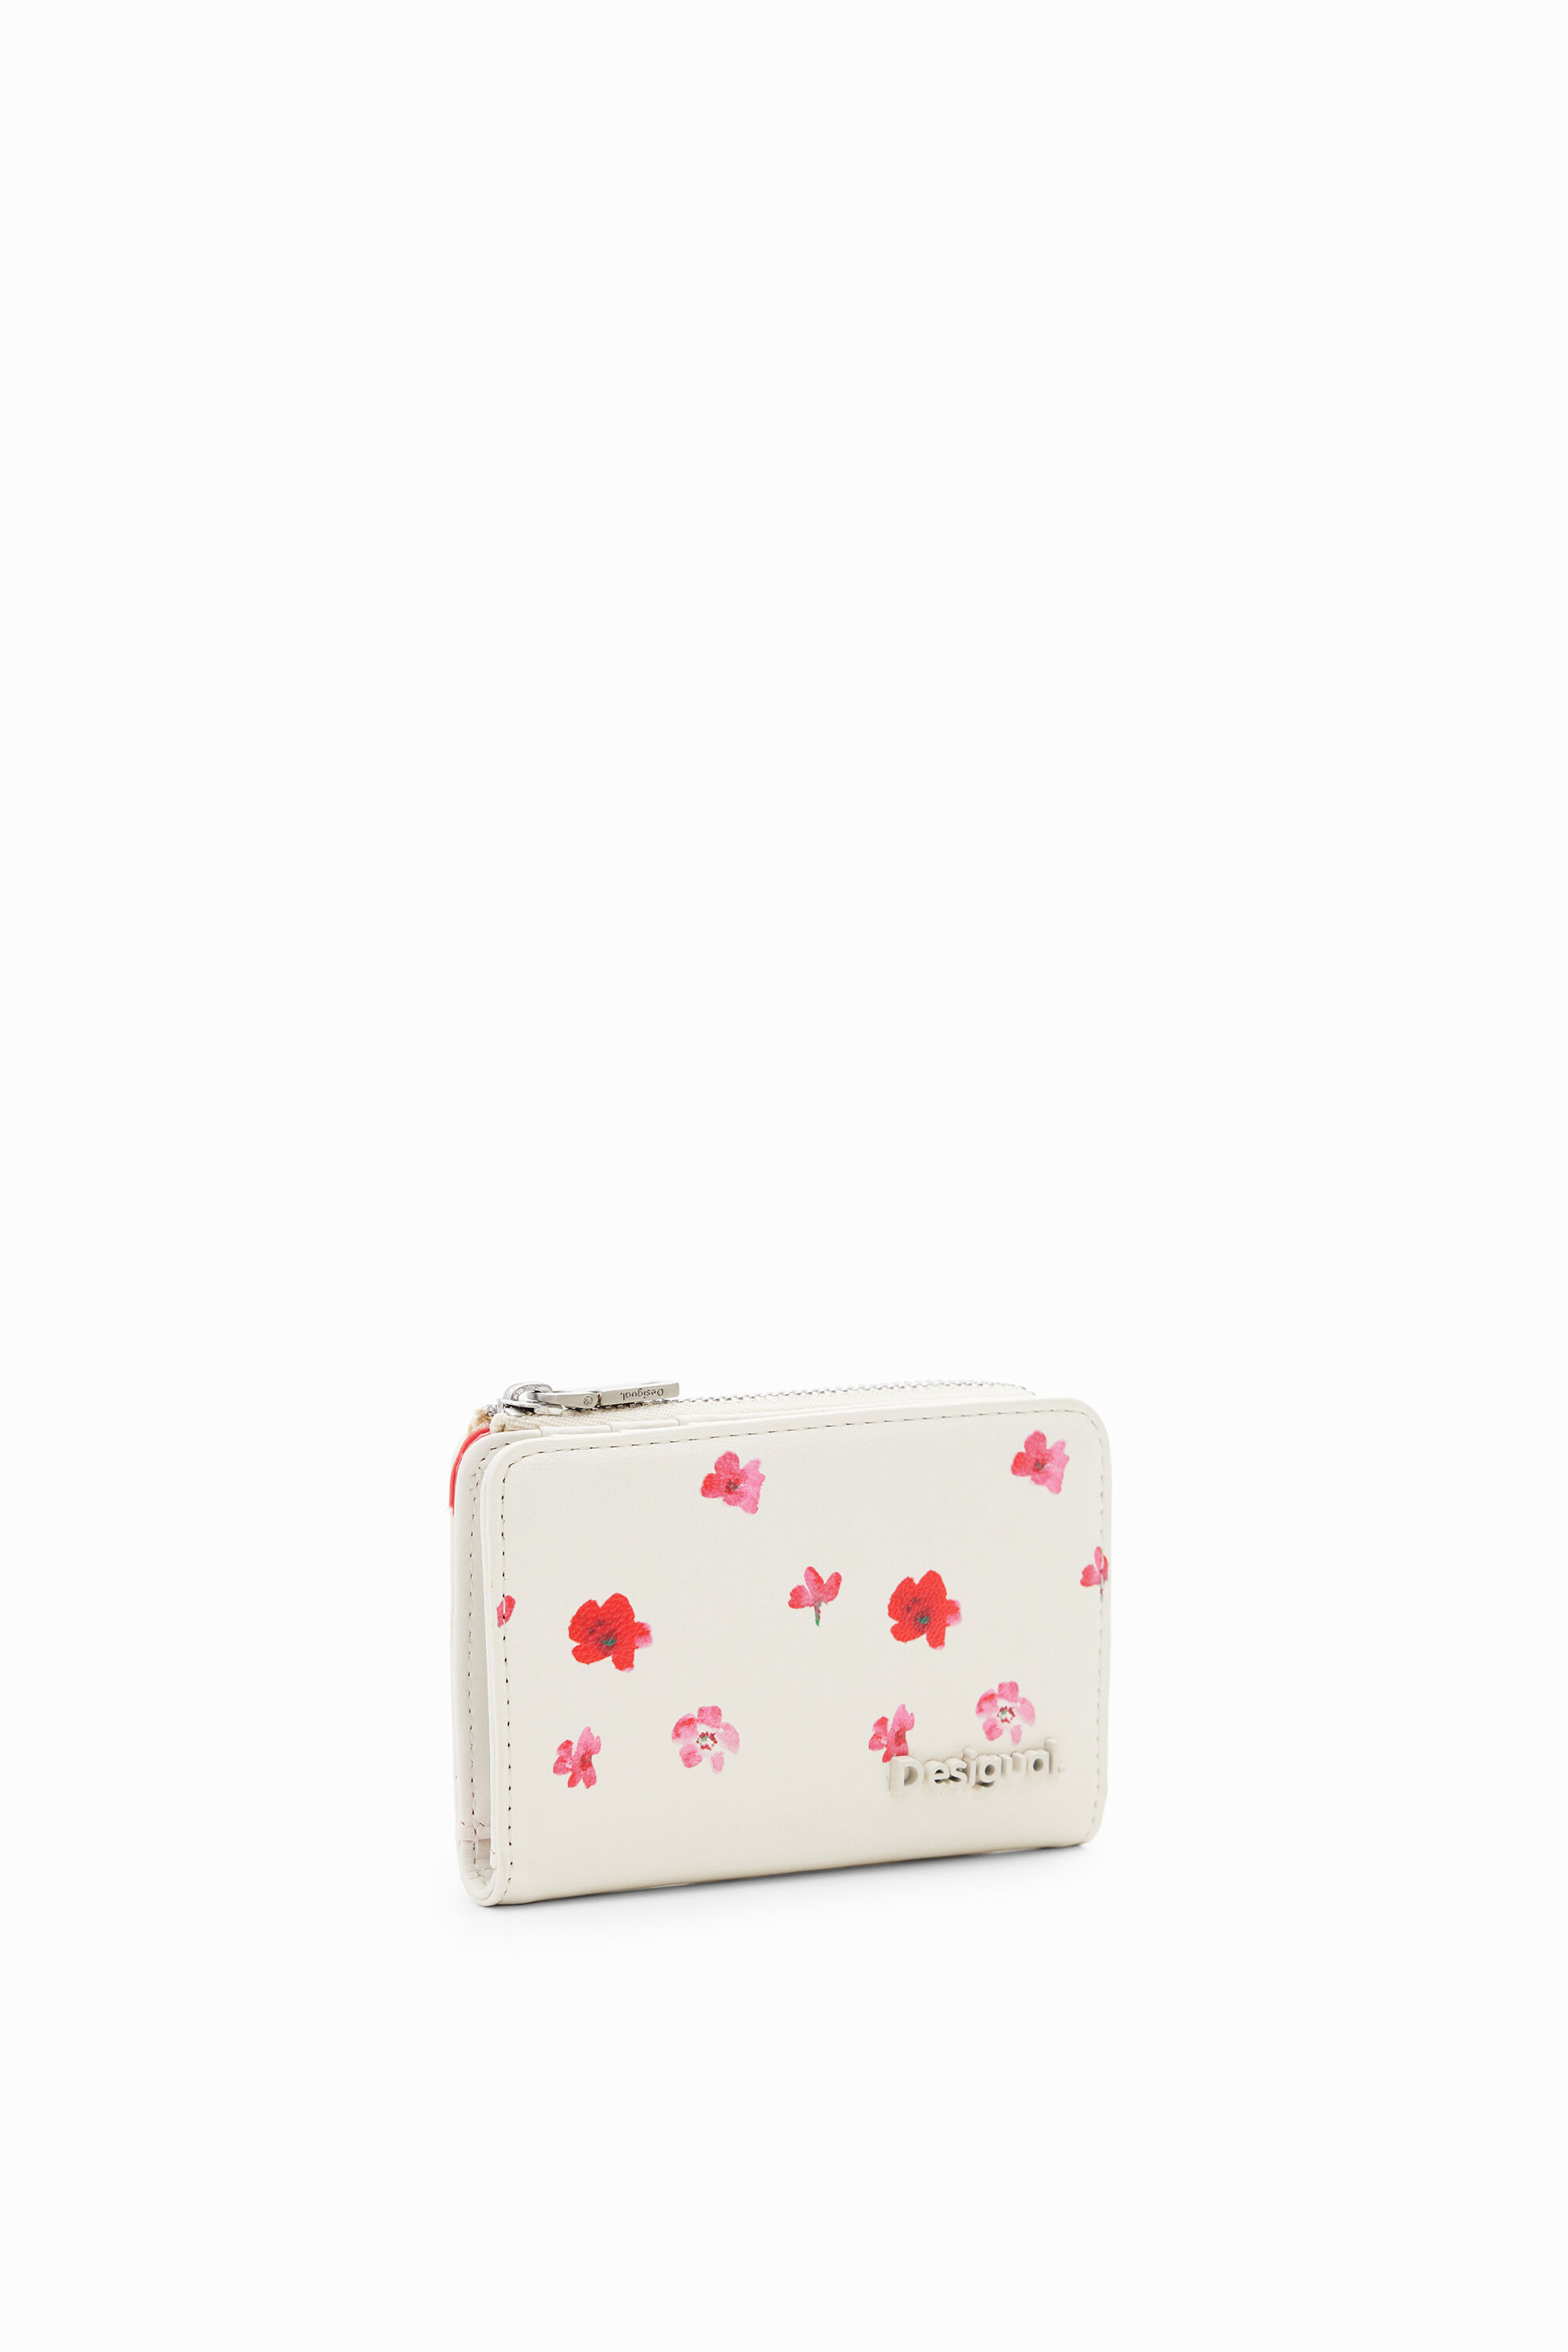 Desigual S floral wallet